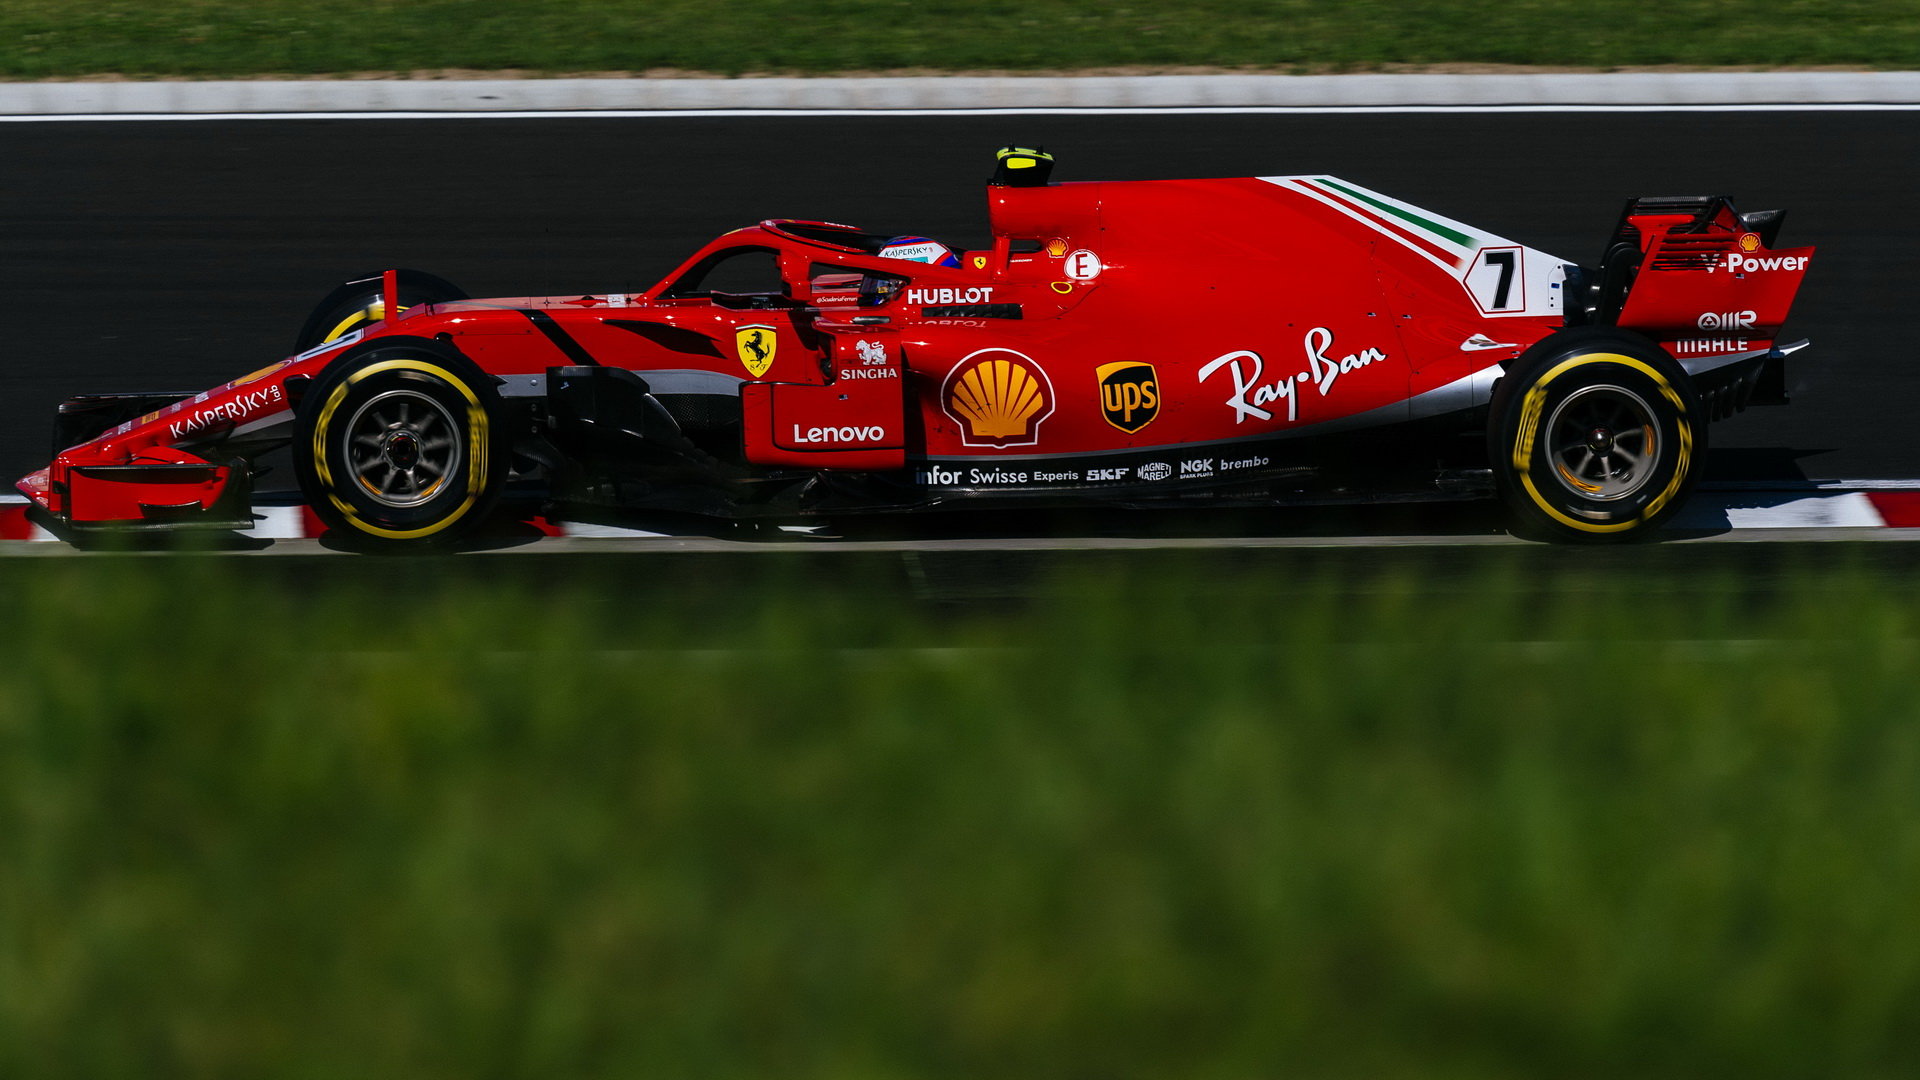 Kimi Räikkönen v závodě v Maďarsku